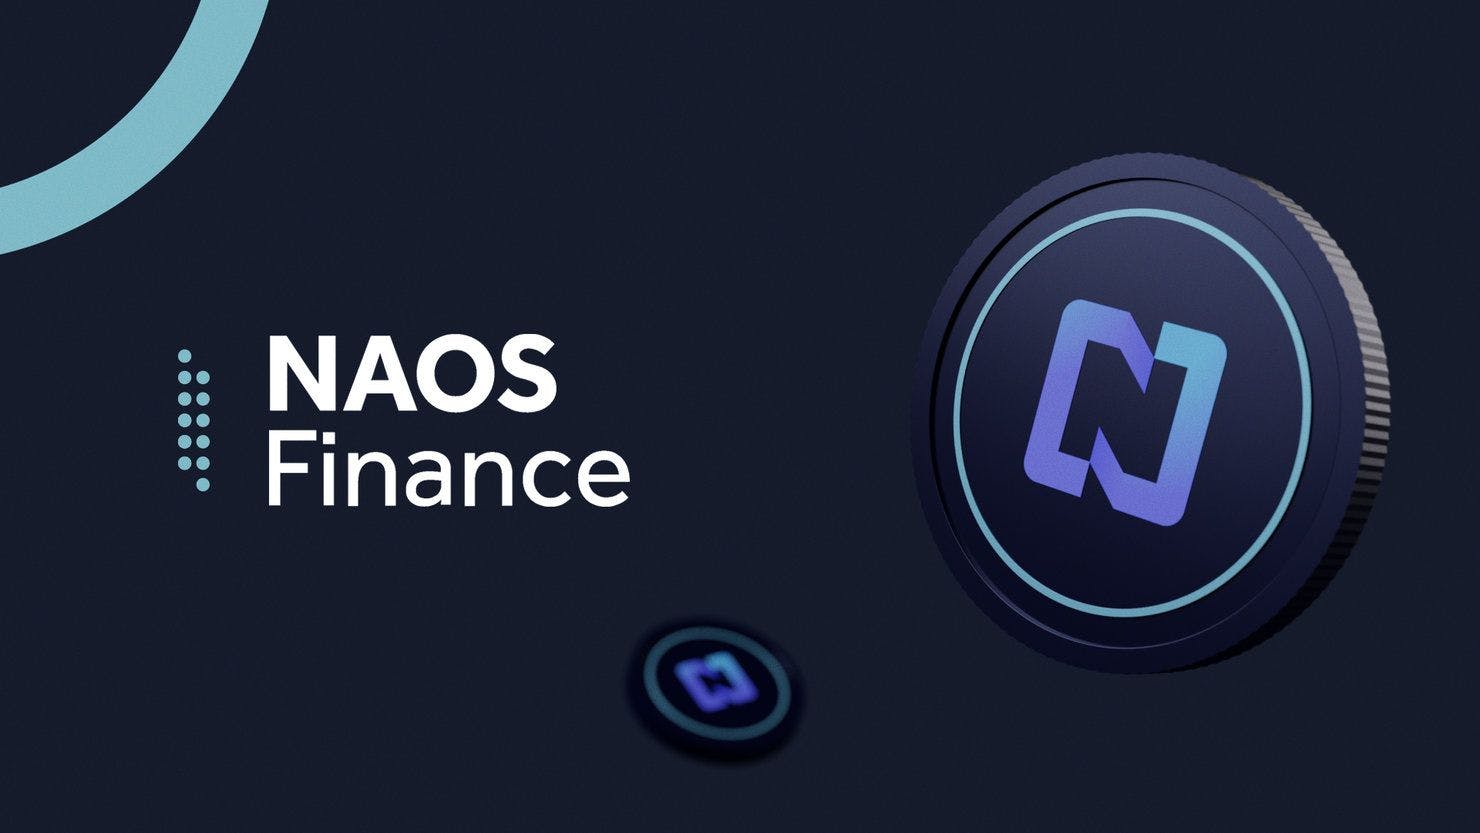 NAOS Finance Image #1